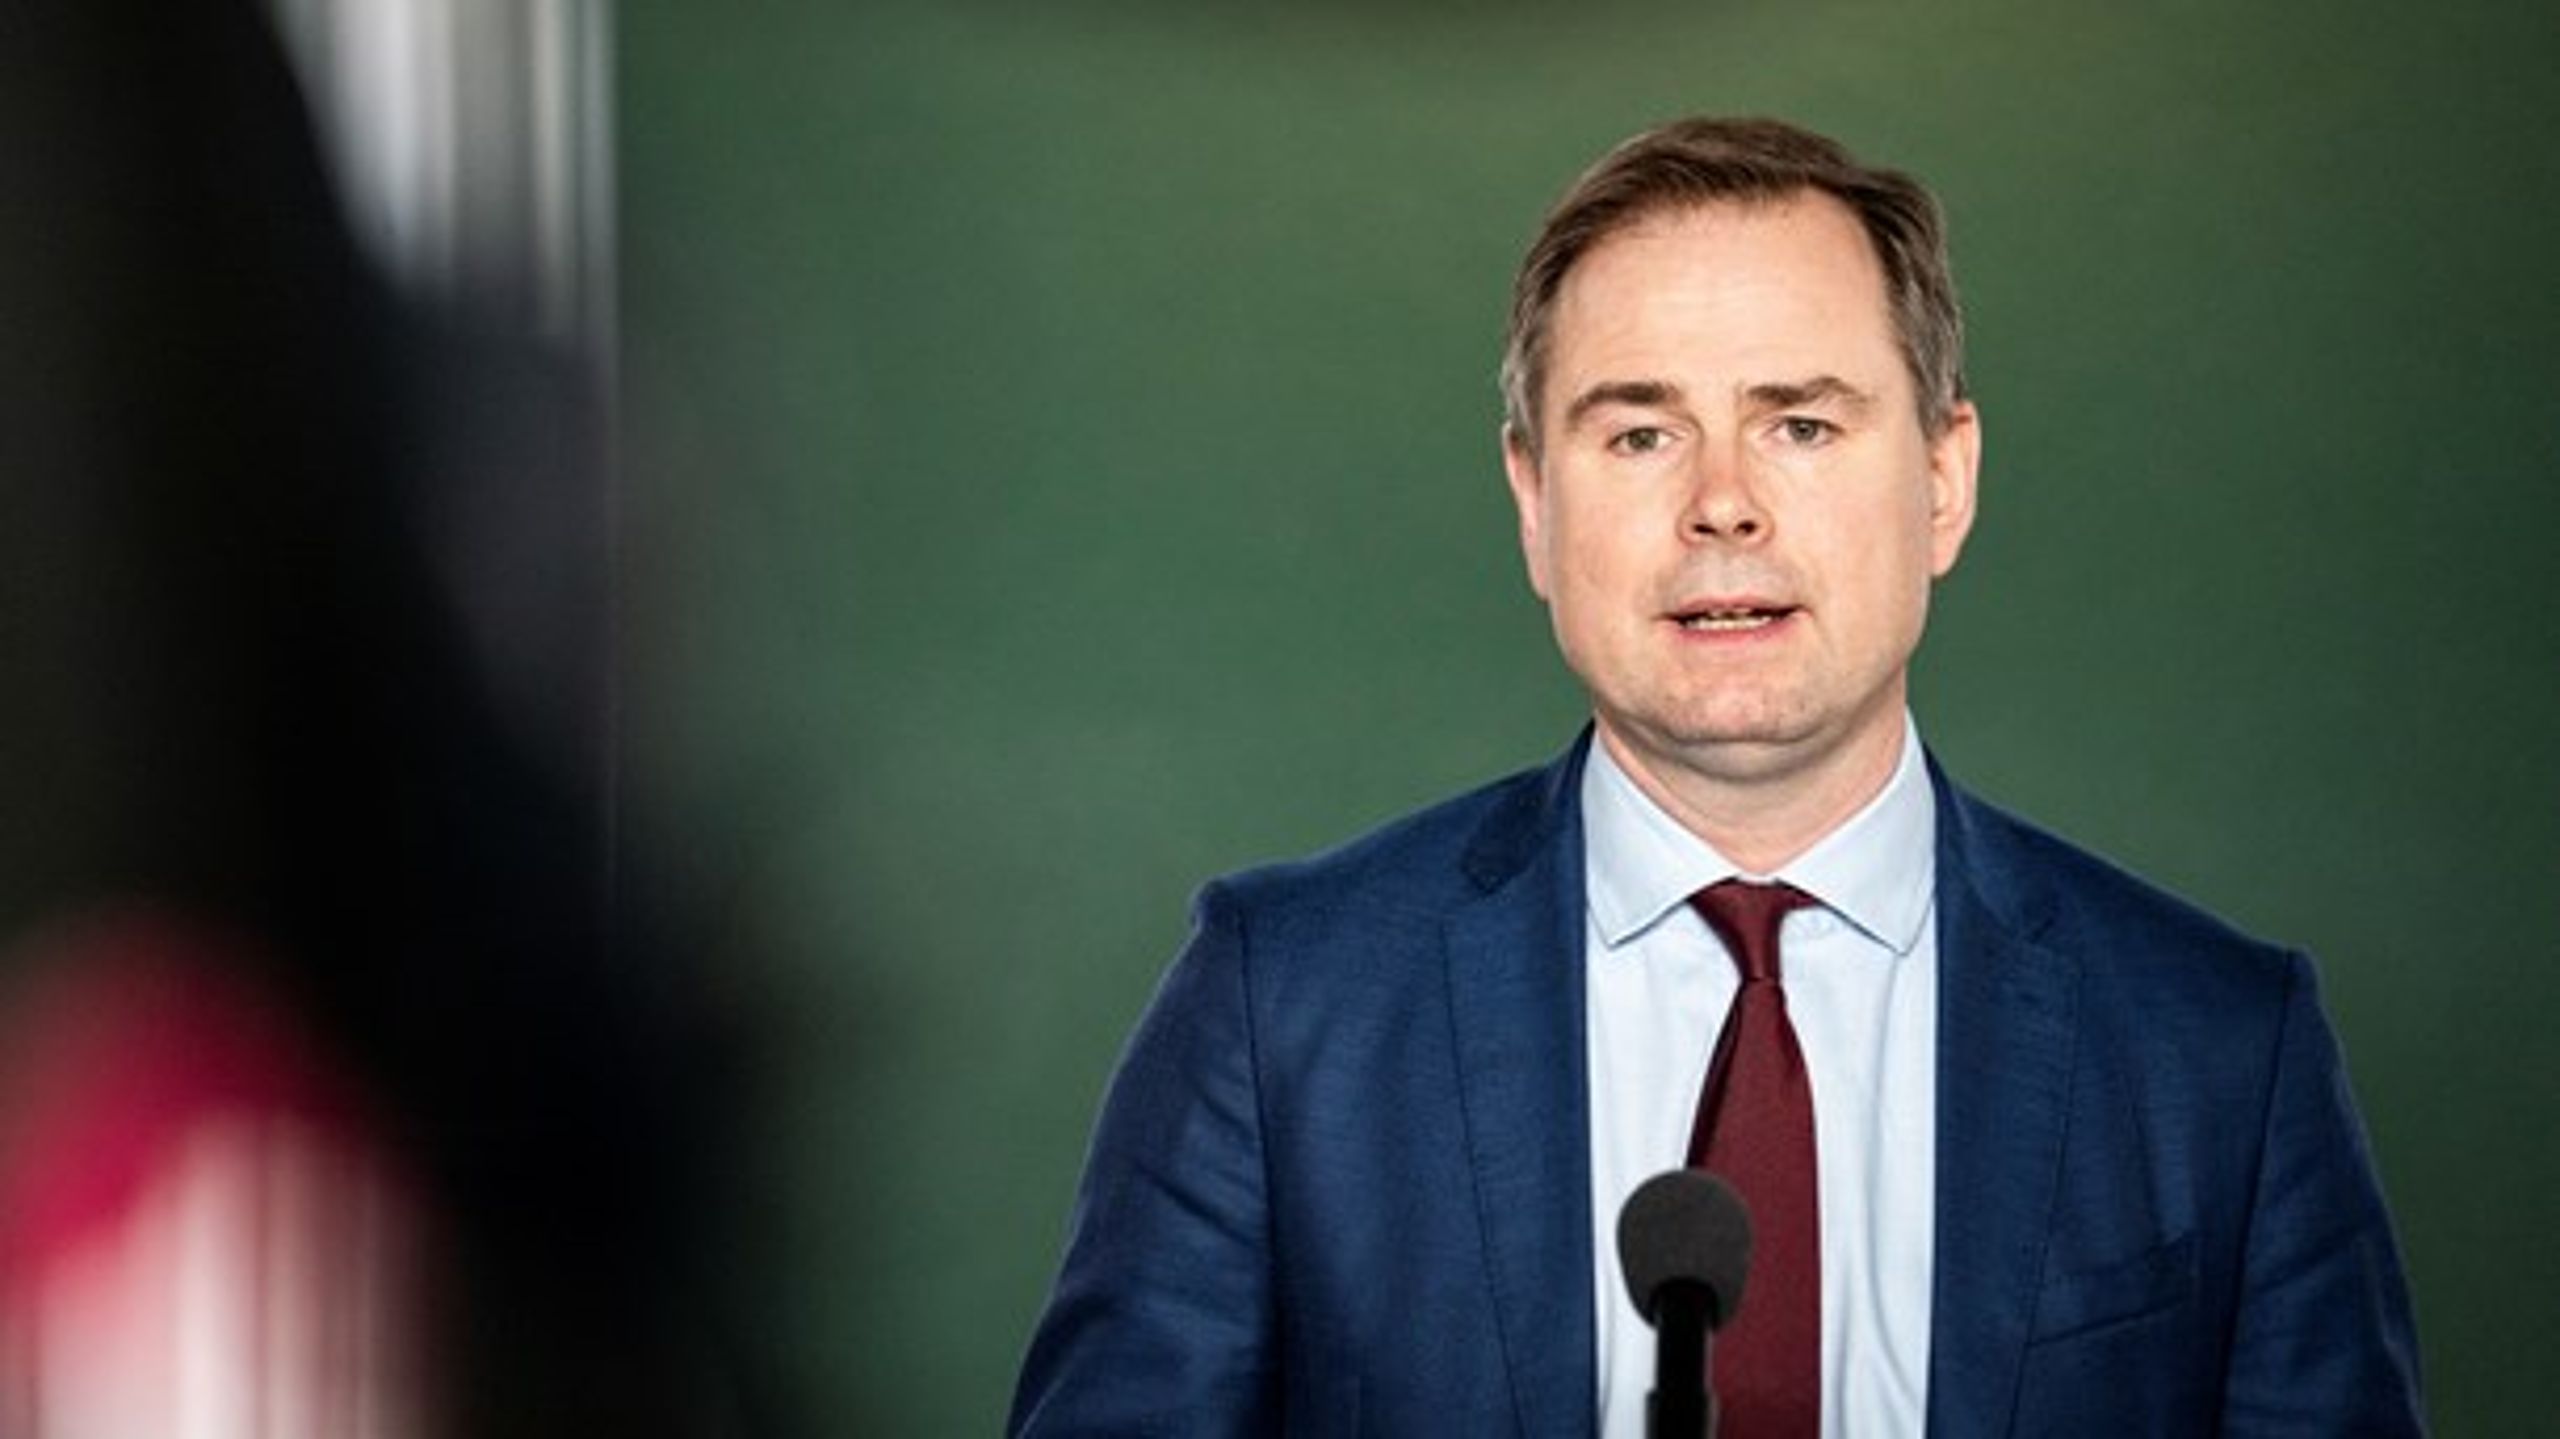 Finansminister Nicolai Wammen (S) har&nbsp;annonceret, at coronahjælpepakkerne ikke kommer til at blive finansieret af nedskæringspolitik.&nbsp;